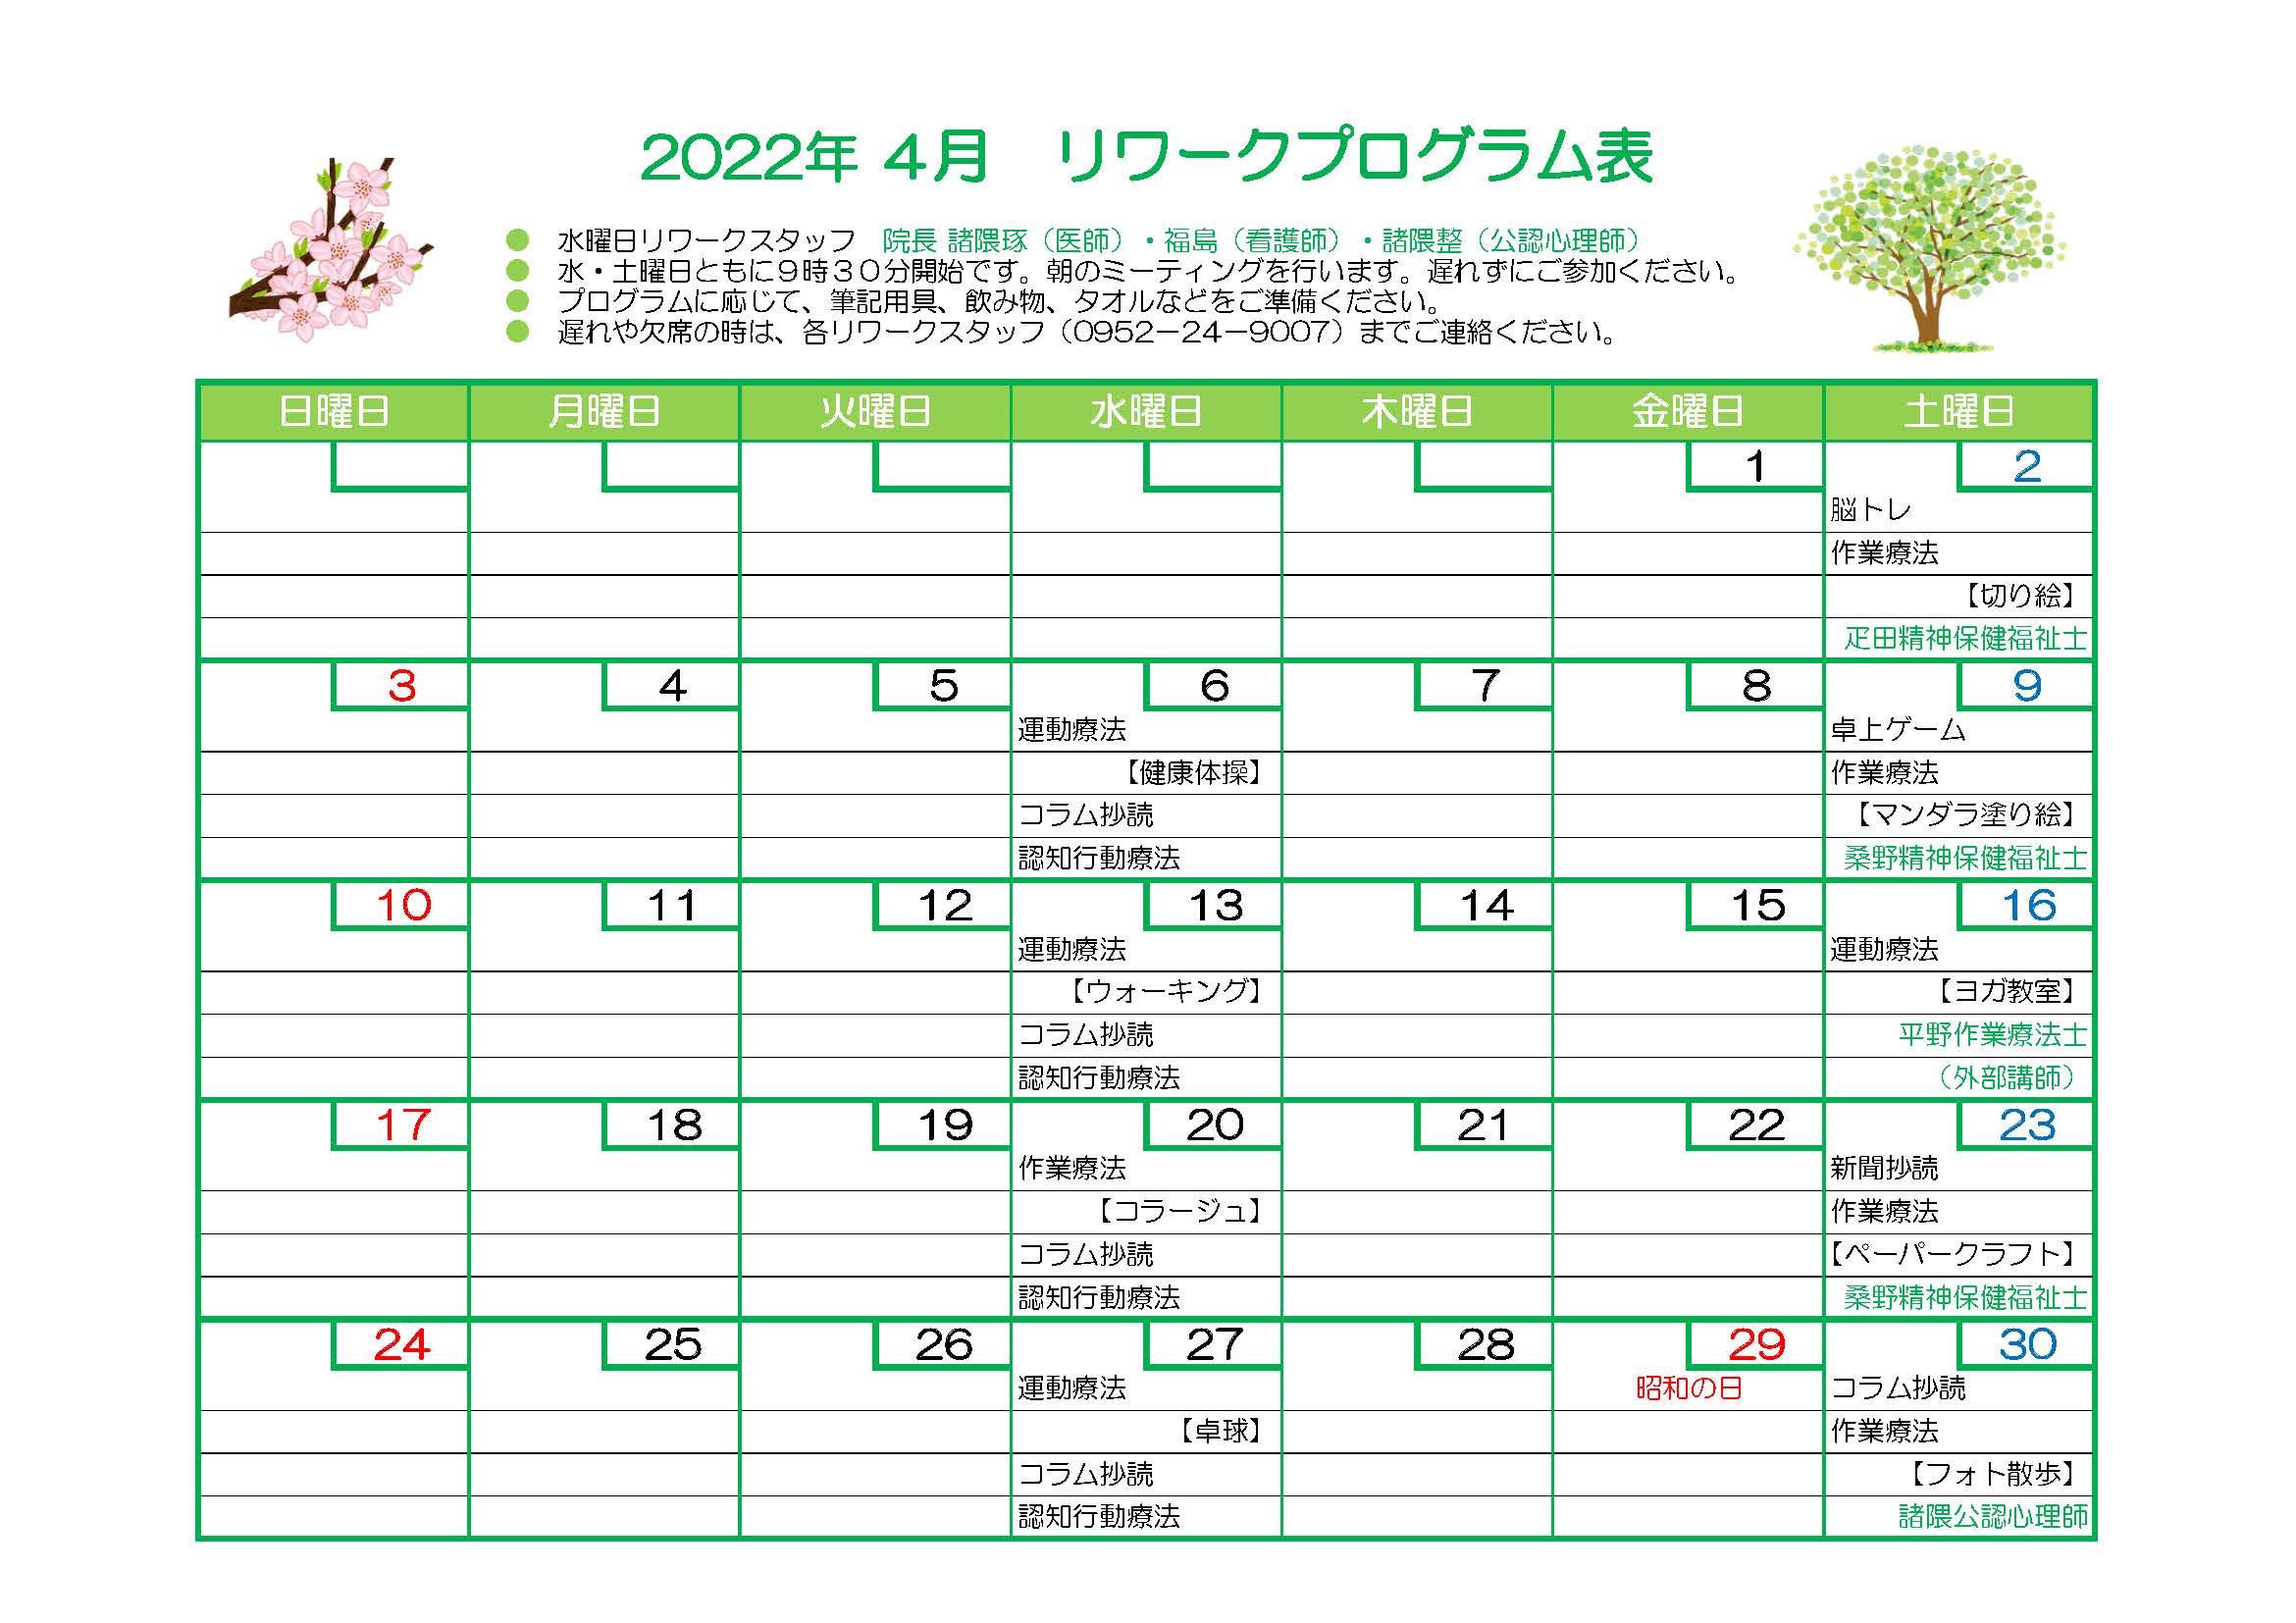 2022年4月プログラム表